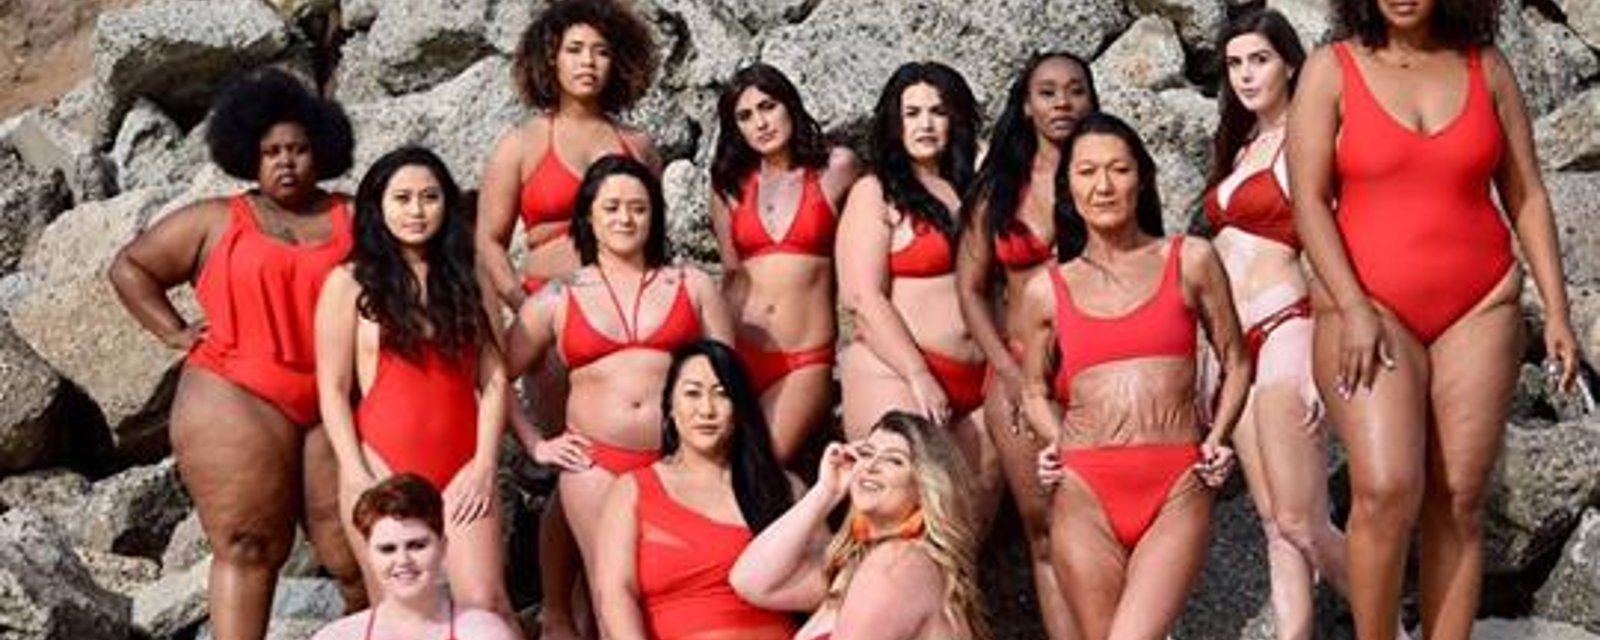 Une photographe prend en photo différentes femmes en maillot de bain pour célébrer la diversité corporelle